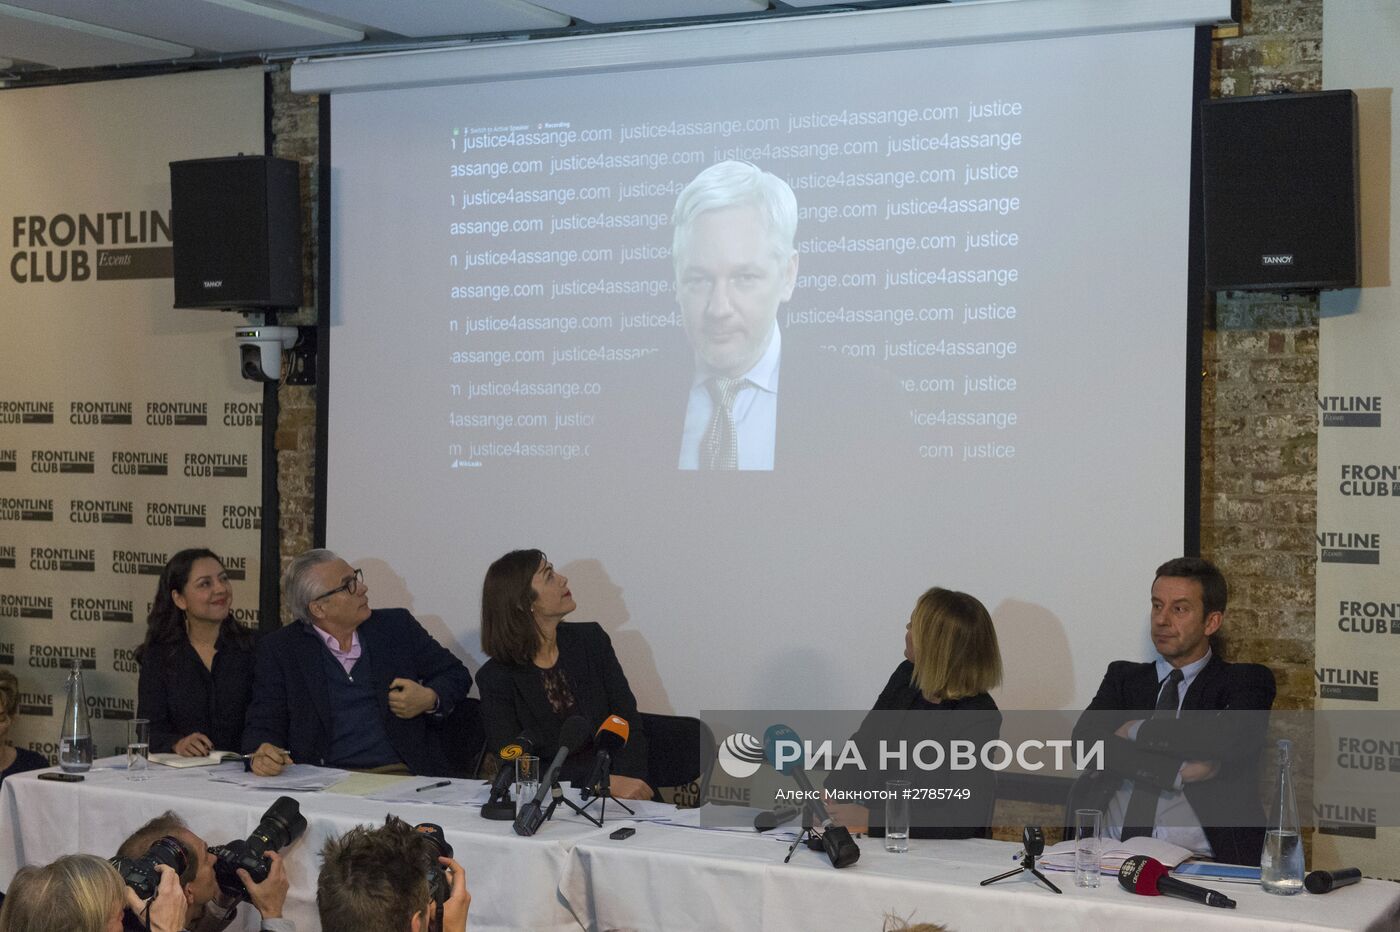 Джулиан Ассанж принял участие в пресс-конференции по видеосвязи из посольства Эквадора в Лондоне